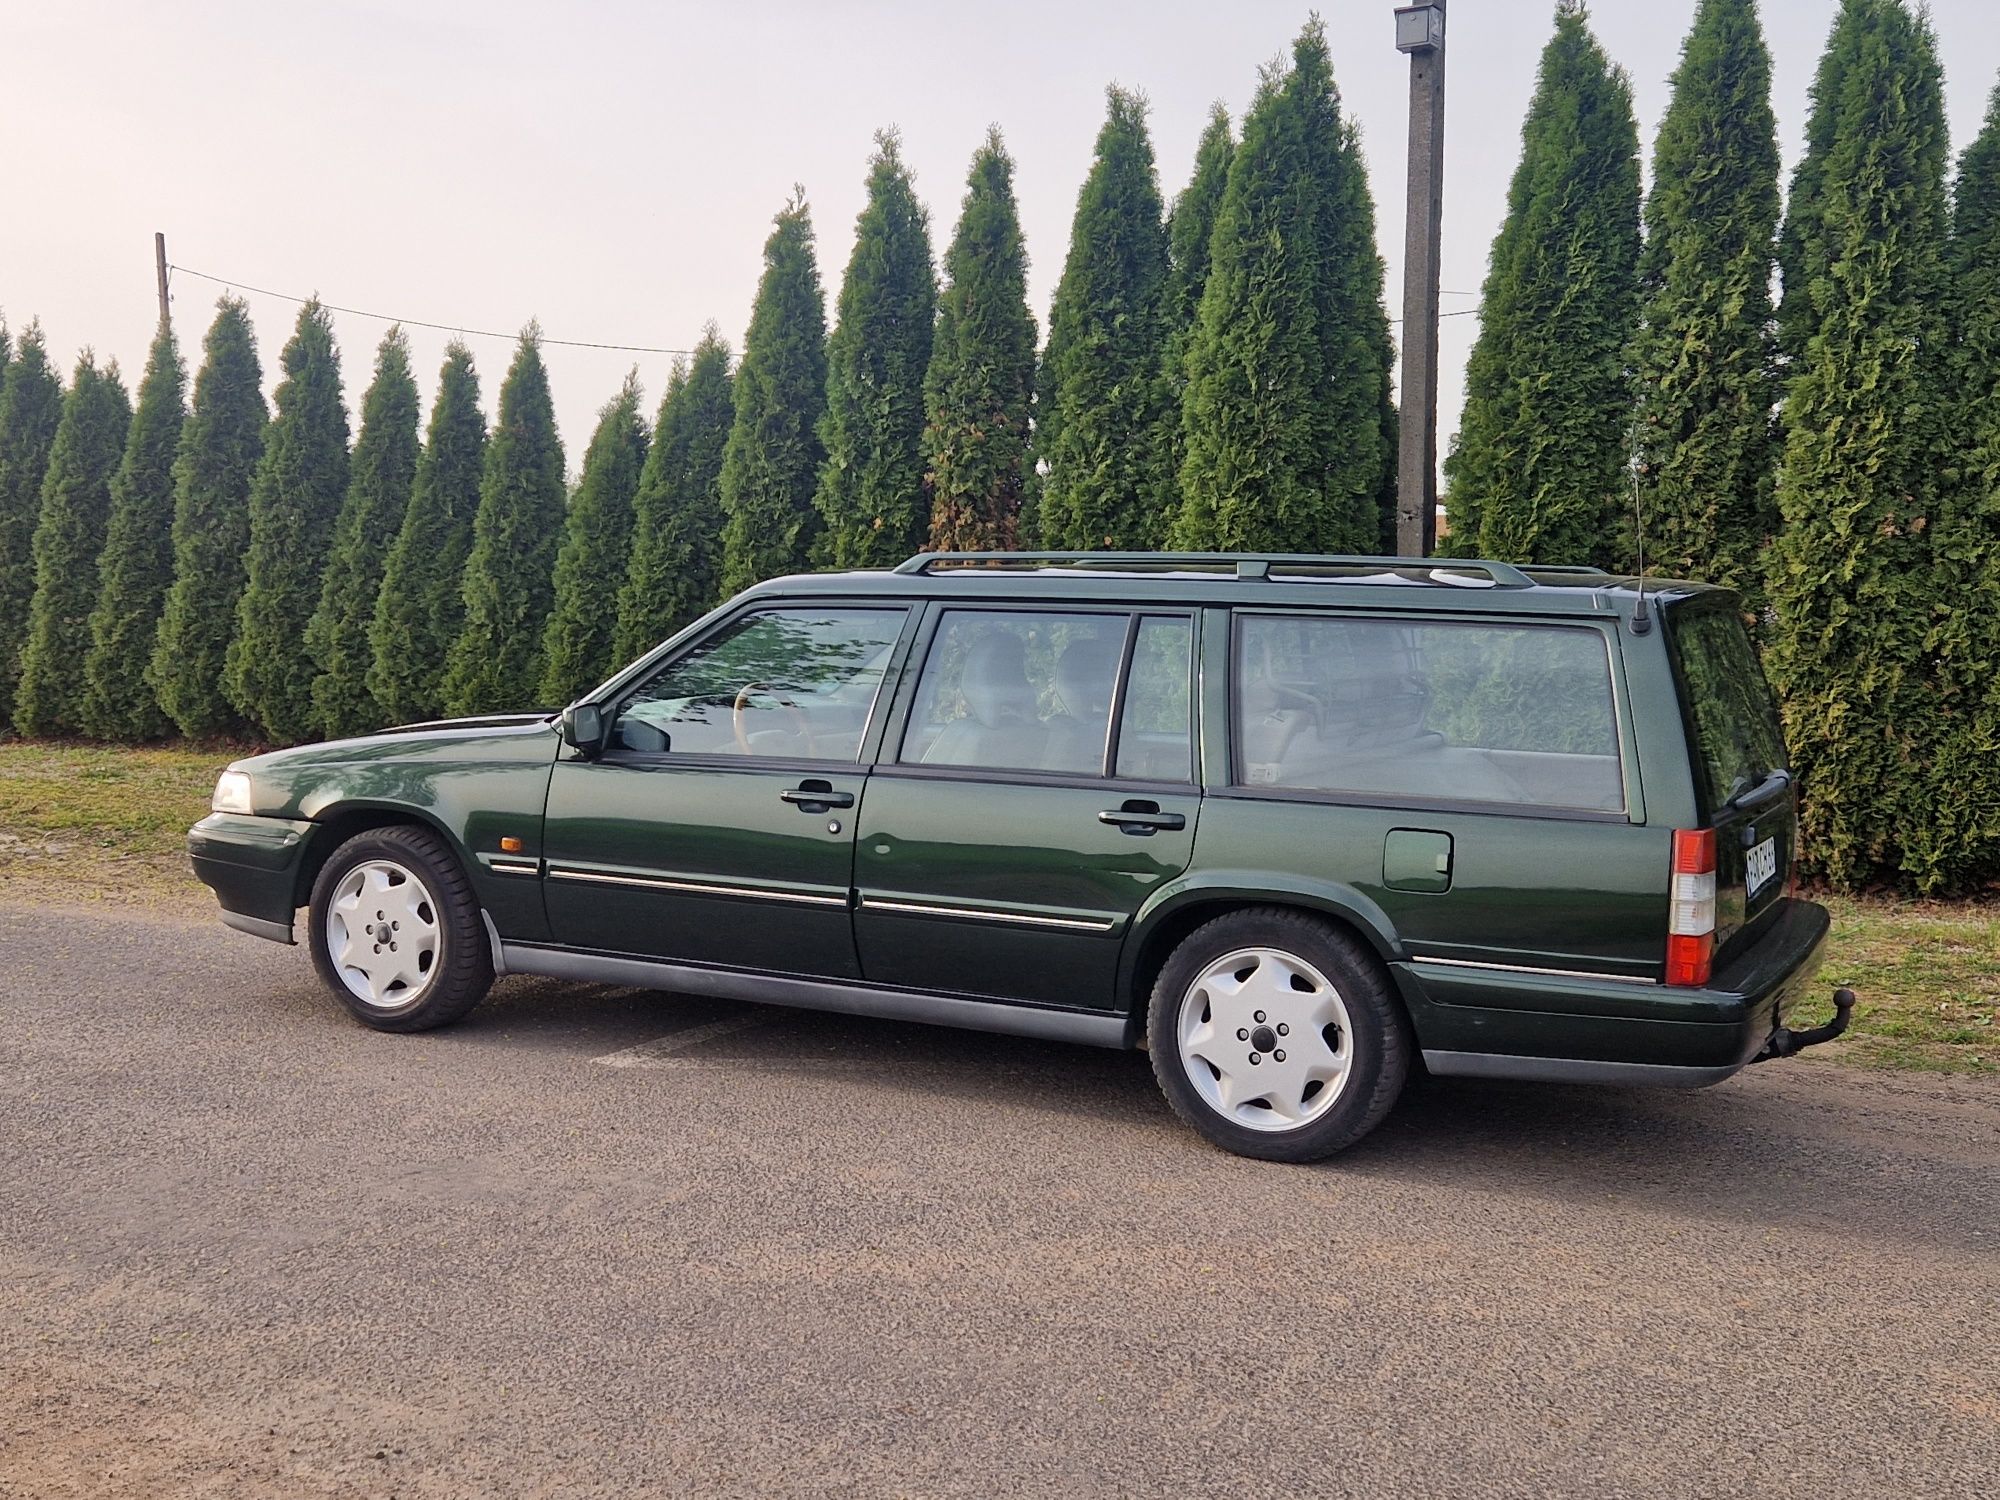 Volvo 960 2.5 benzyna 175km 1996rok piękny klasyk Skóry klima